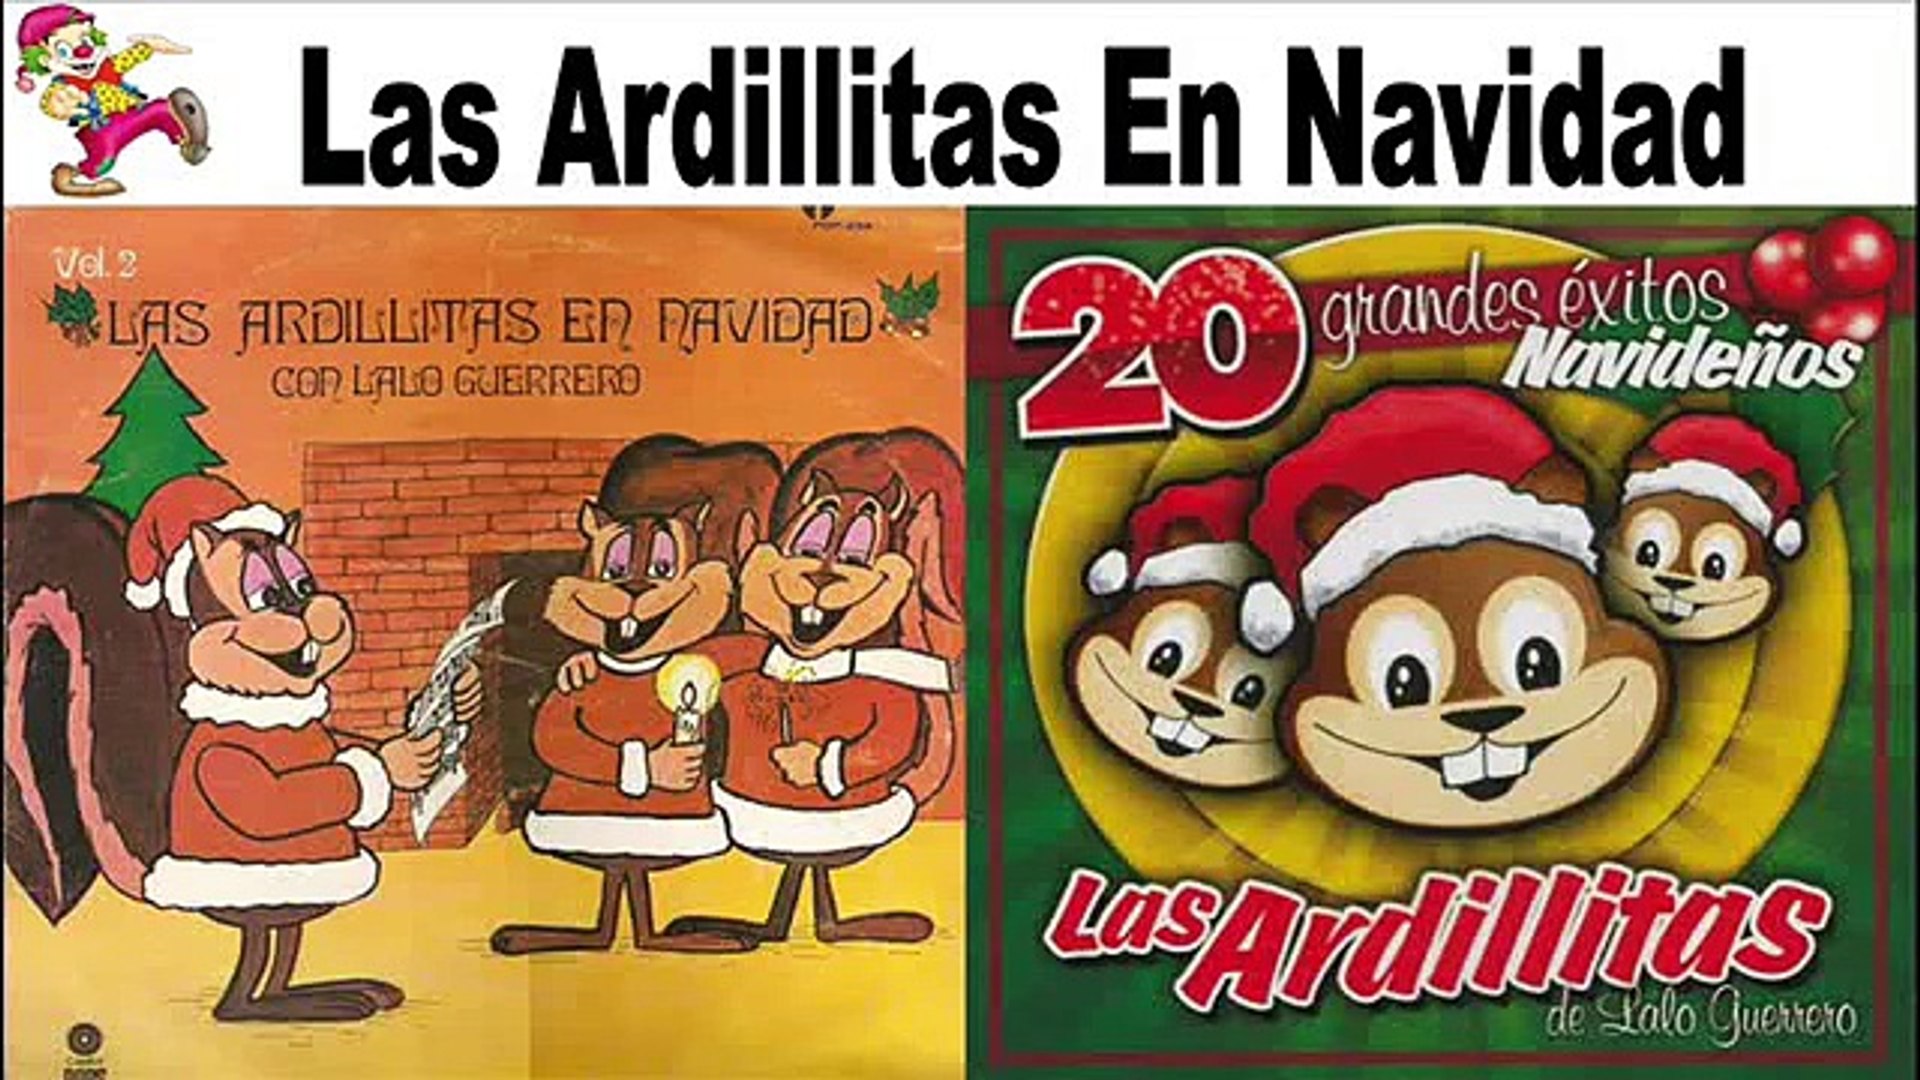 Las Ardillitas LP Navidad Con Lalo Guerrero, antaño mix - Vídeo Dailymotion